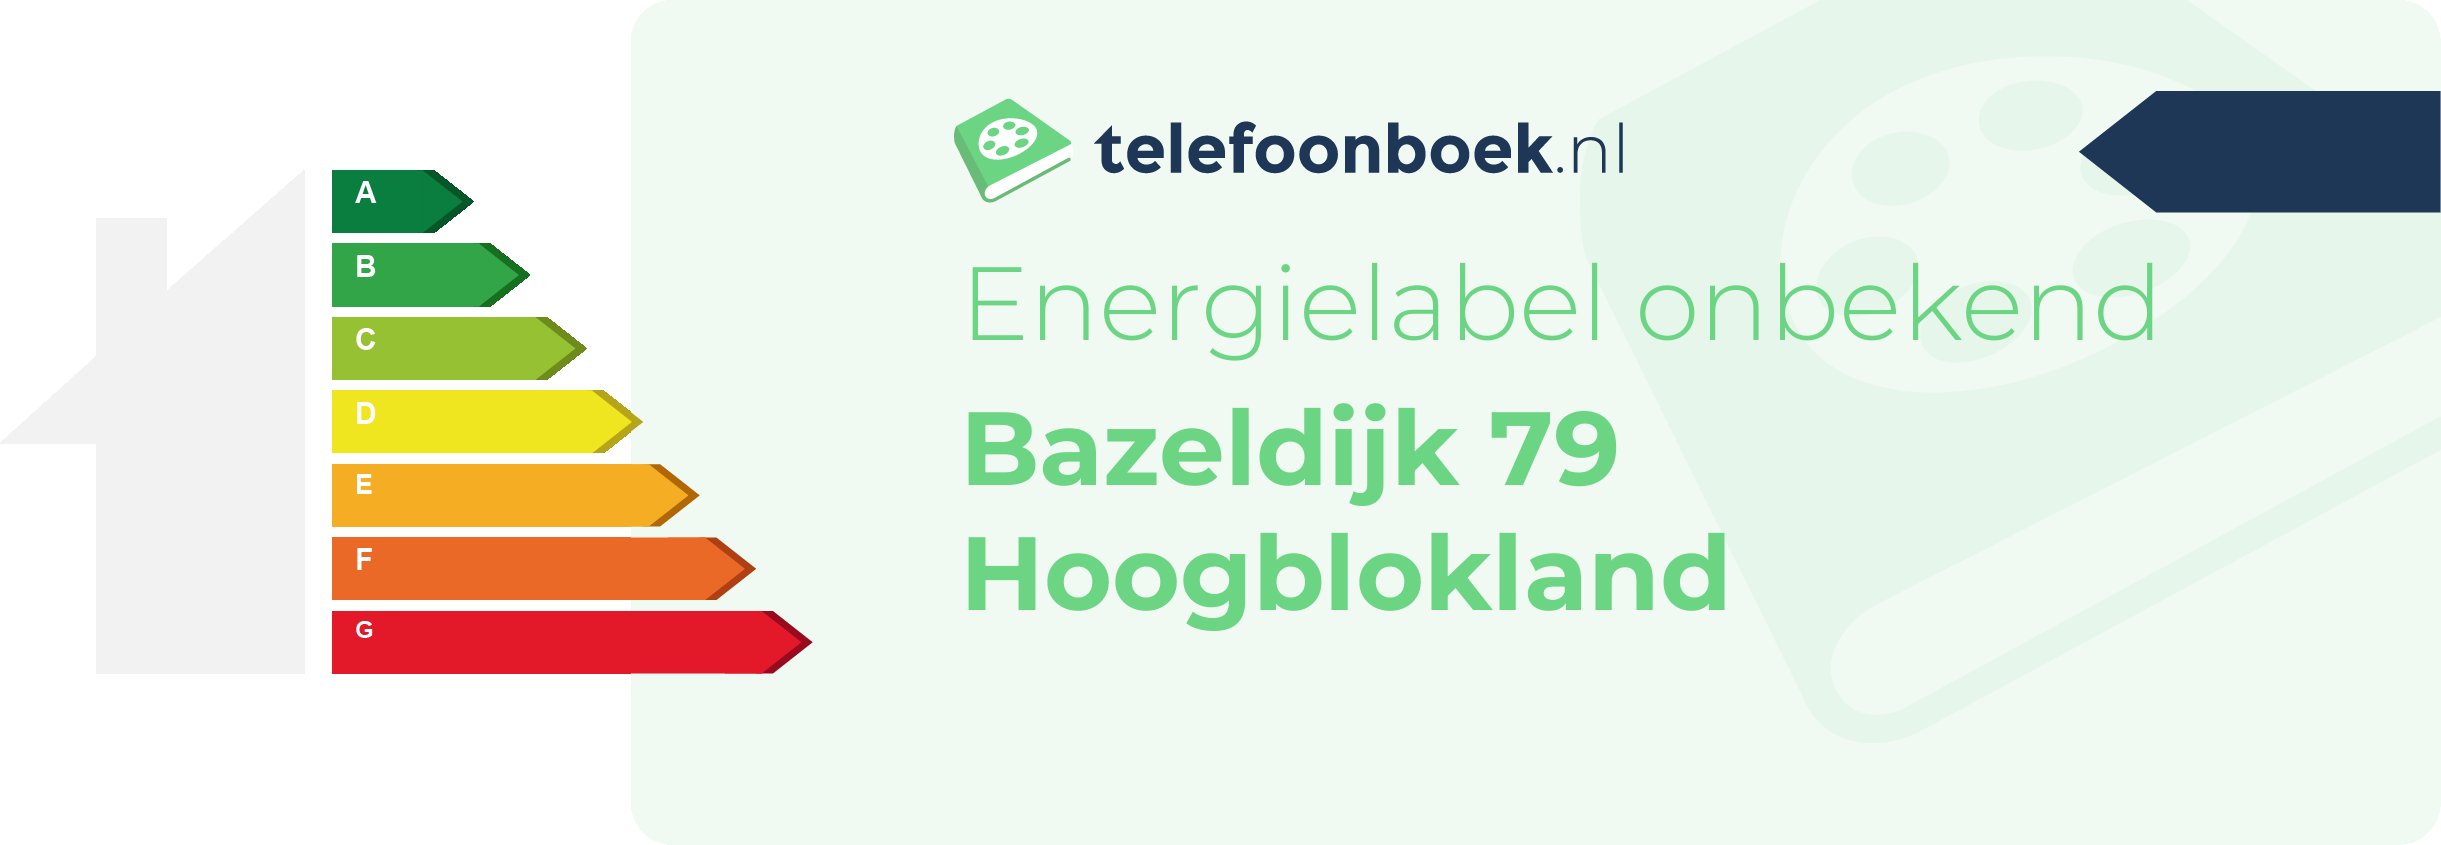 Energielabel Bazeldijk 79 Hoogblokland